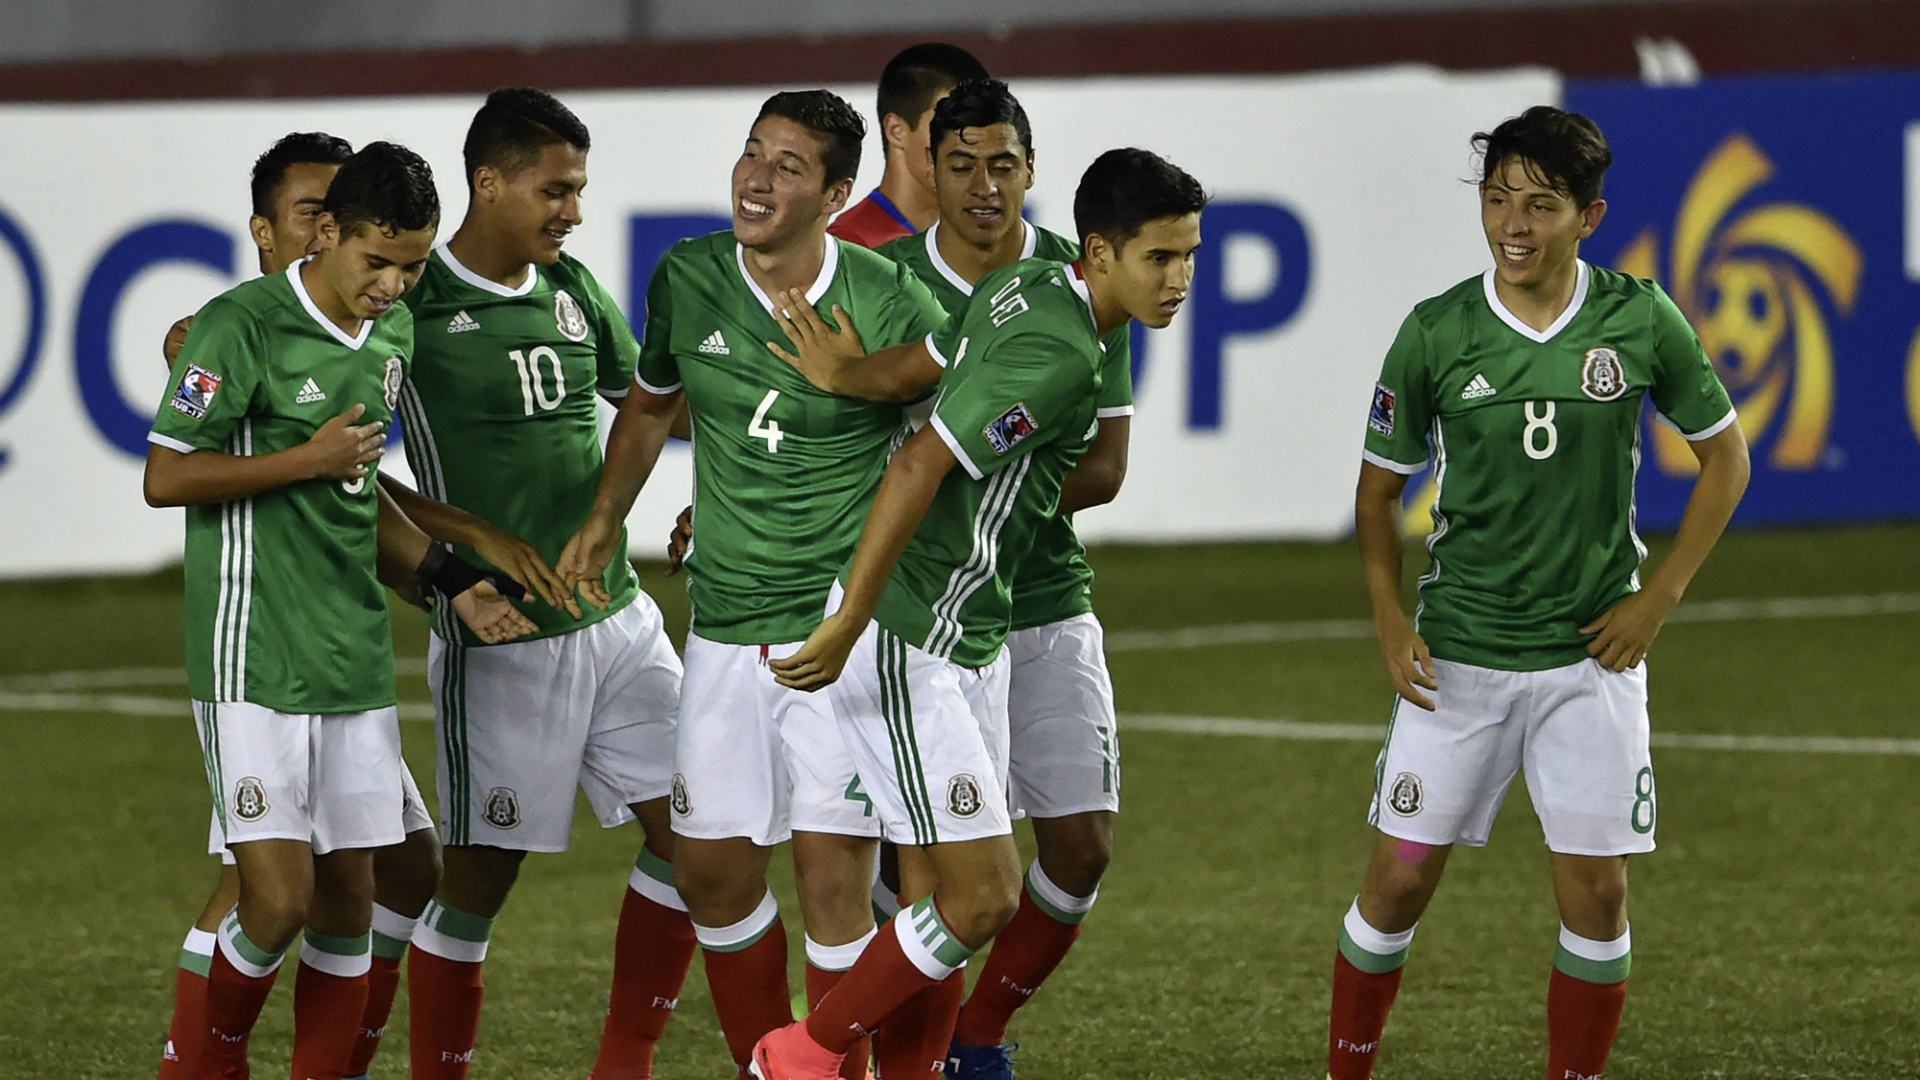 Nhận định U17 Iran vs U17 Mexico, 18h30 ngày 17/10: Khẳng định sức mạnh